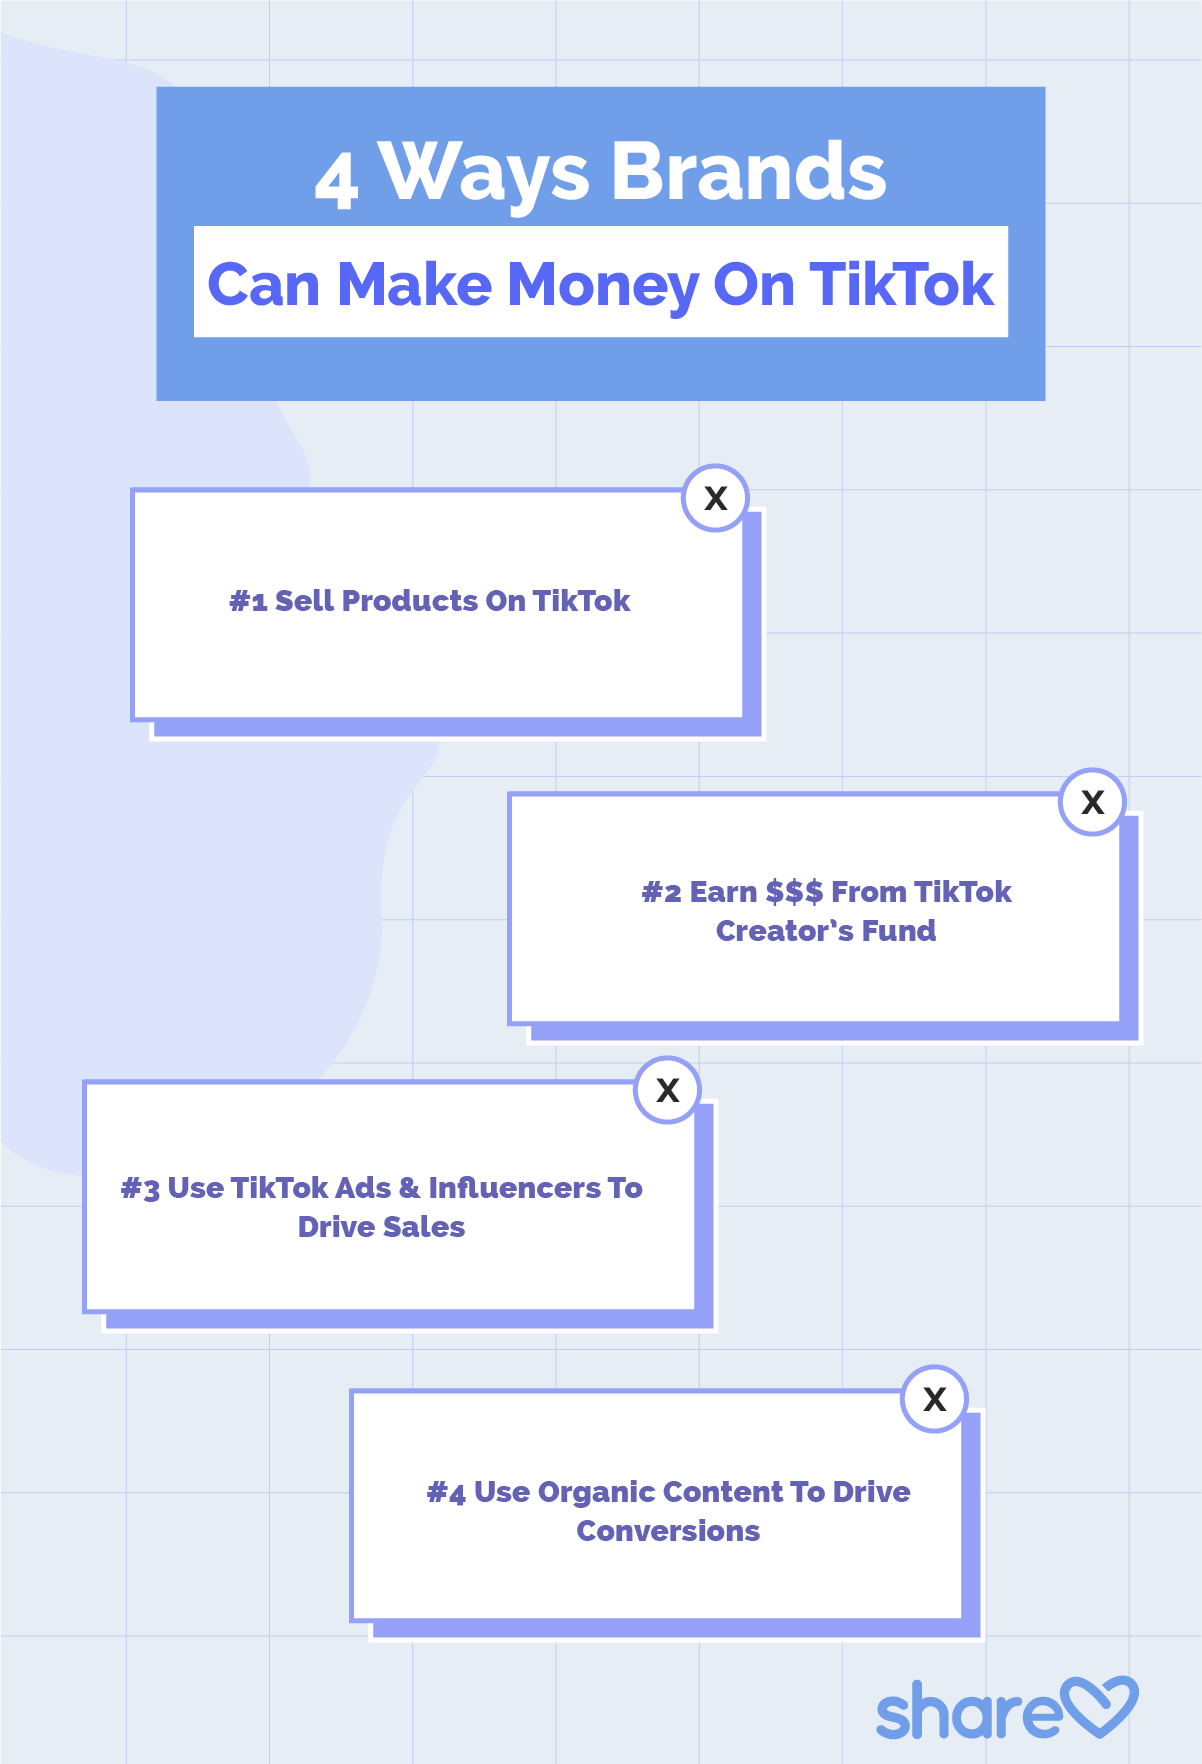 4 Ways Brands Can Make Money On TikTok